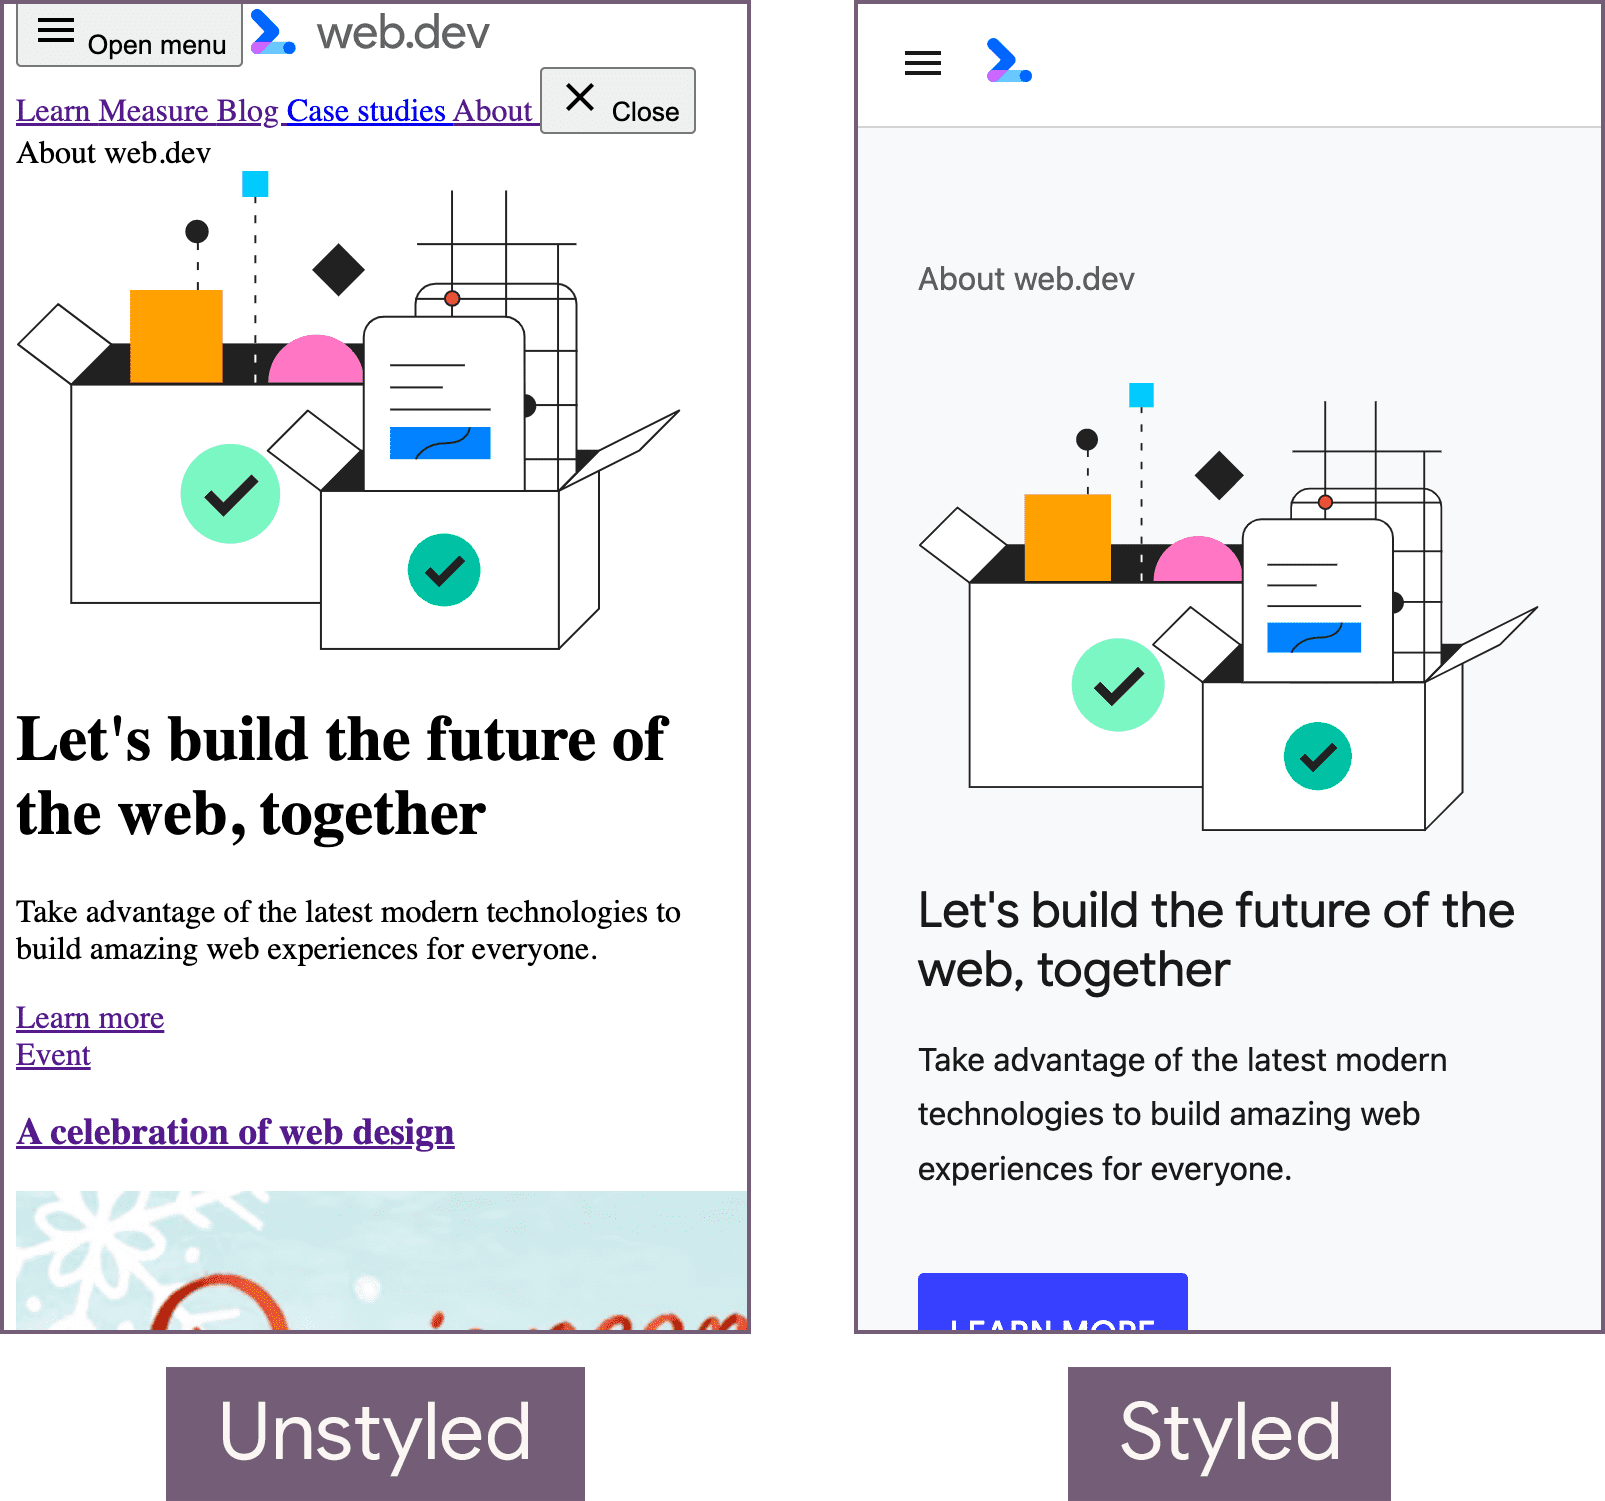 La home page web.dev in uno stato senza stile (a sinistra) e con lo stato con stile (a destra).